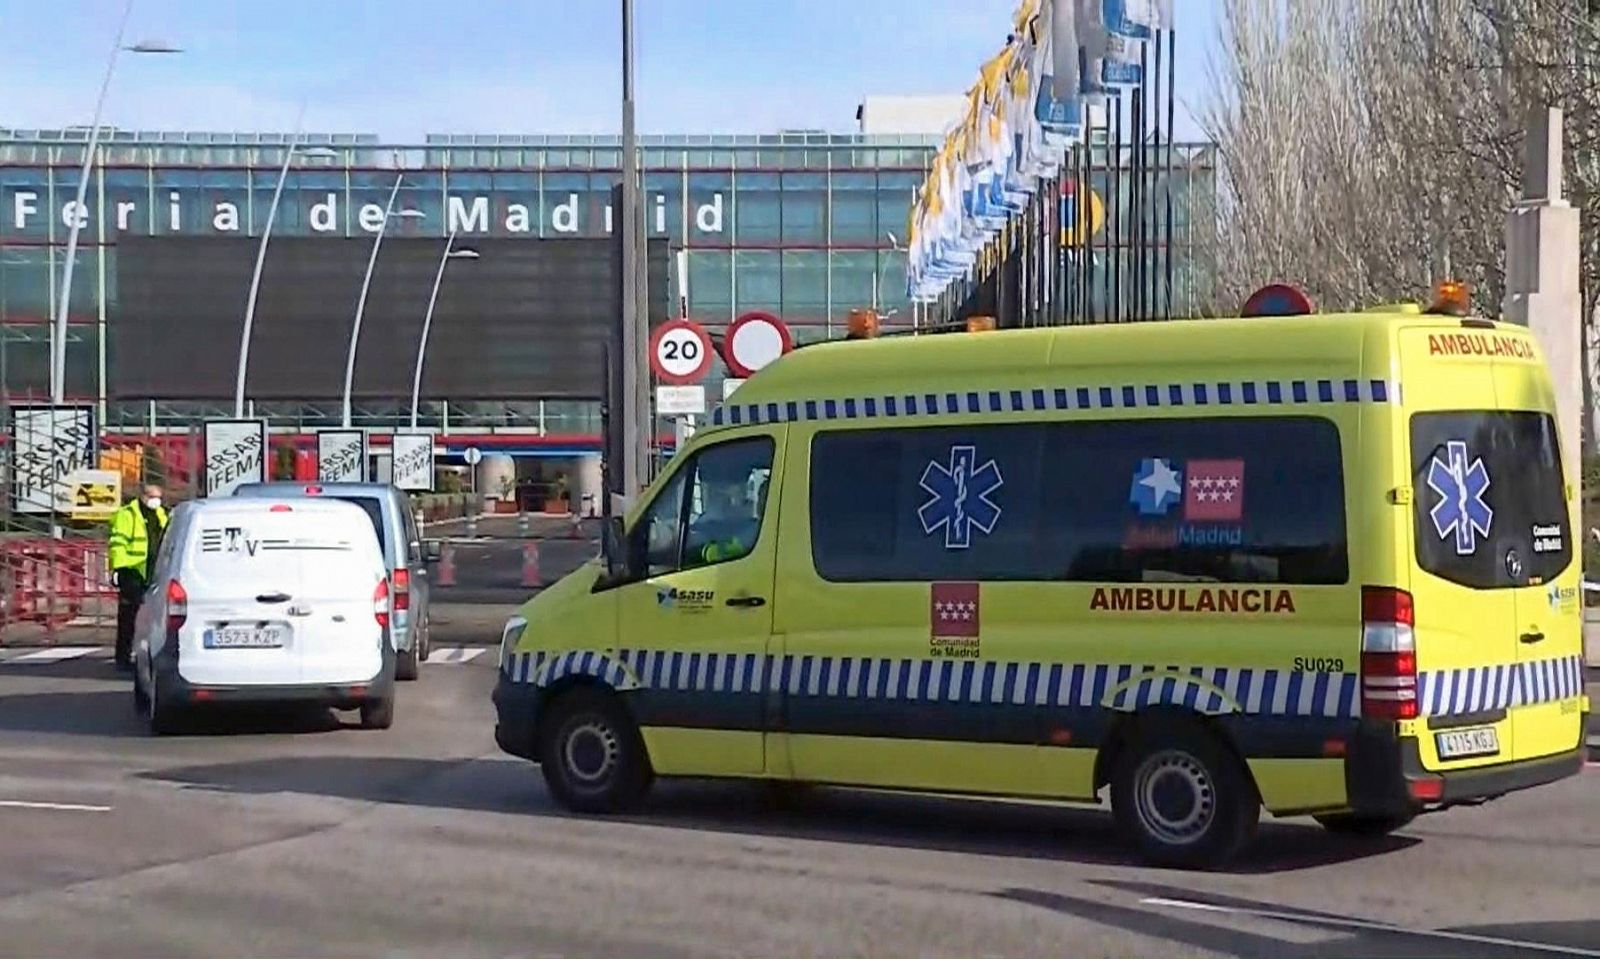 Imagen: Entrada del recinto ferial de Madrid (IFEMA) donde se ha instalado un hospital de campaña